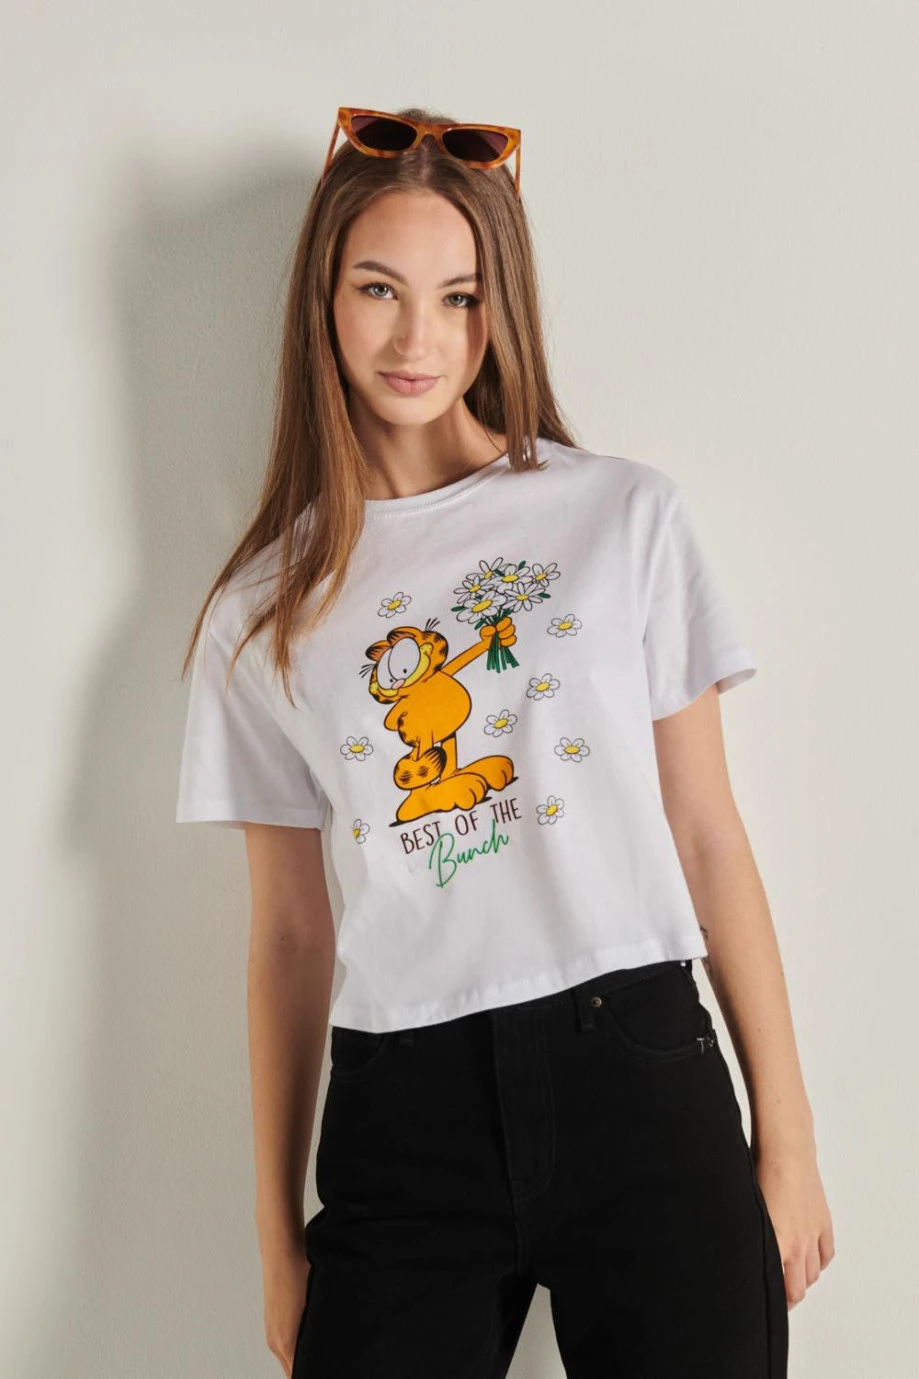 Camiseta oversize crop top blanca con manga corta y diseño de Garfield